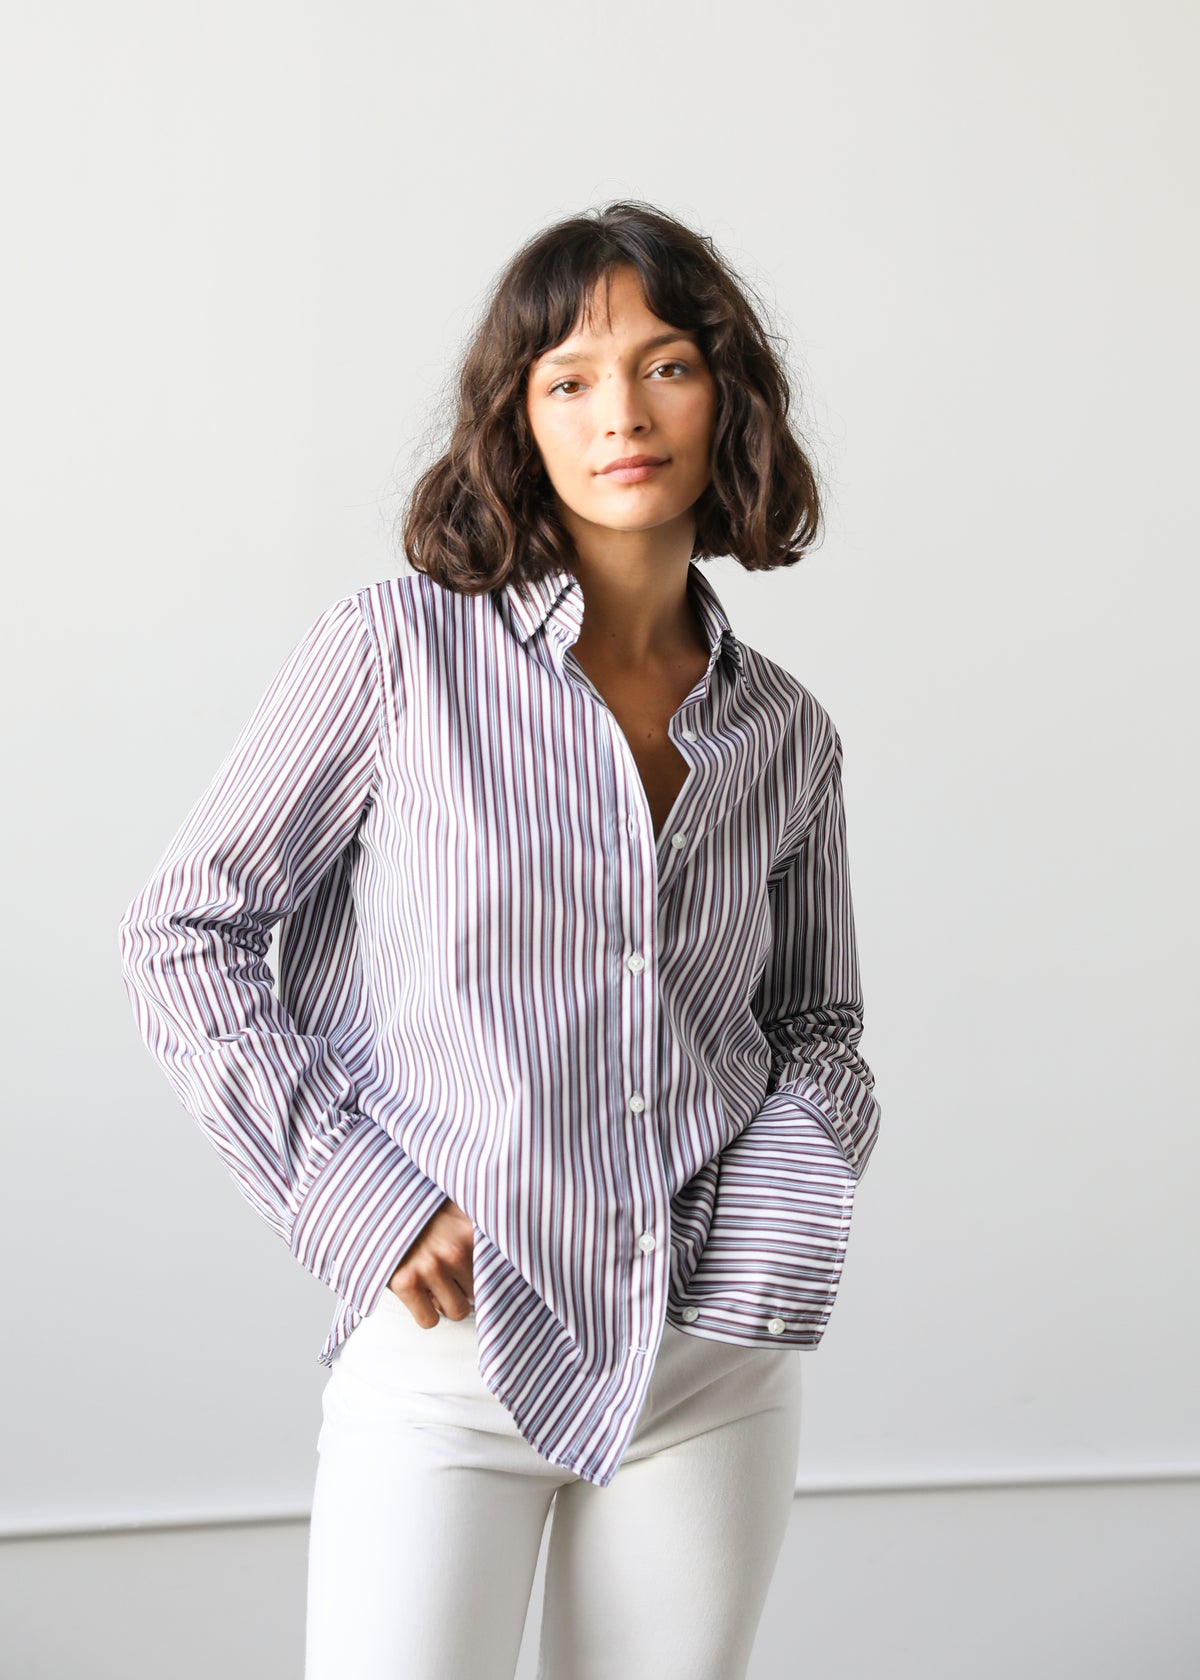 Estella NYC Gemma Button Up Shirt in Maroon Stripe Cotton Poplin